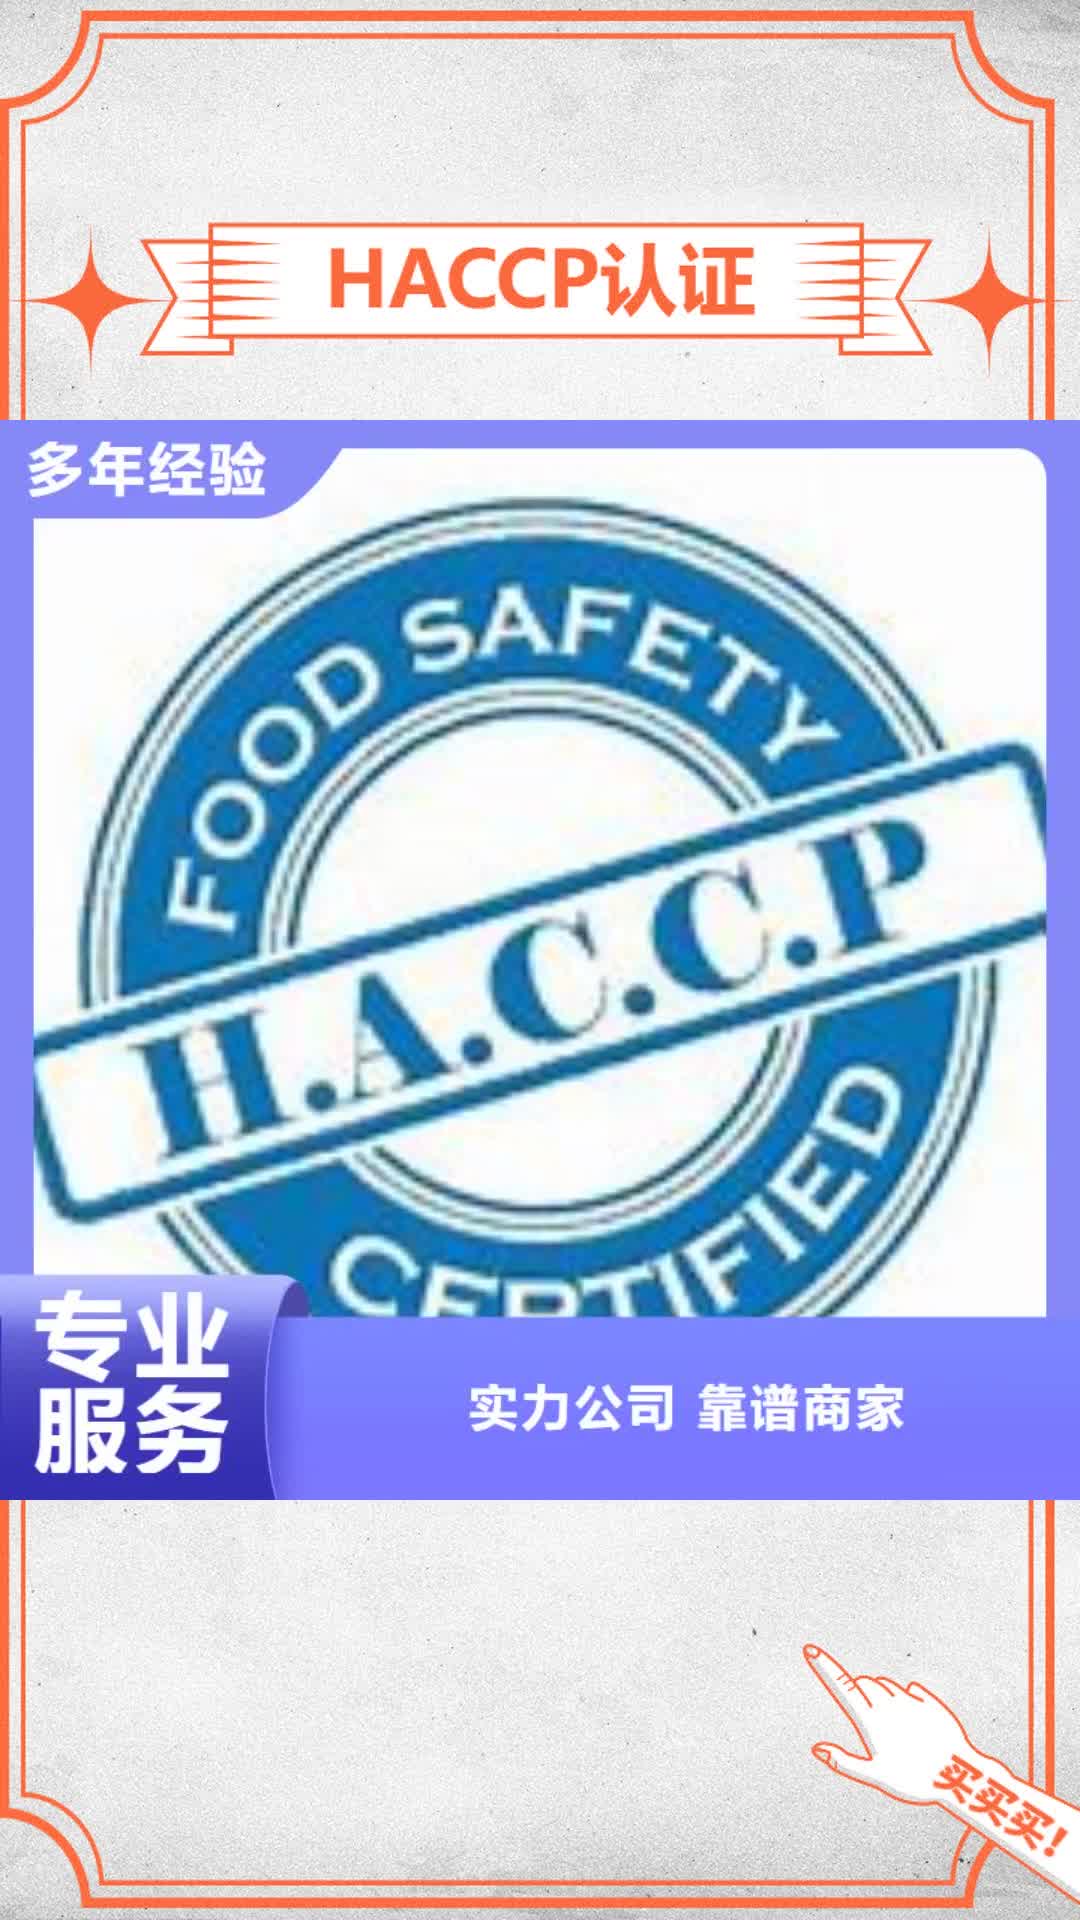 【许昌 HACCP认证知识产权认证/GB29490高效】